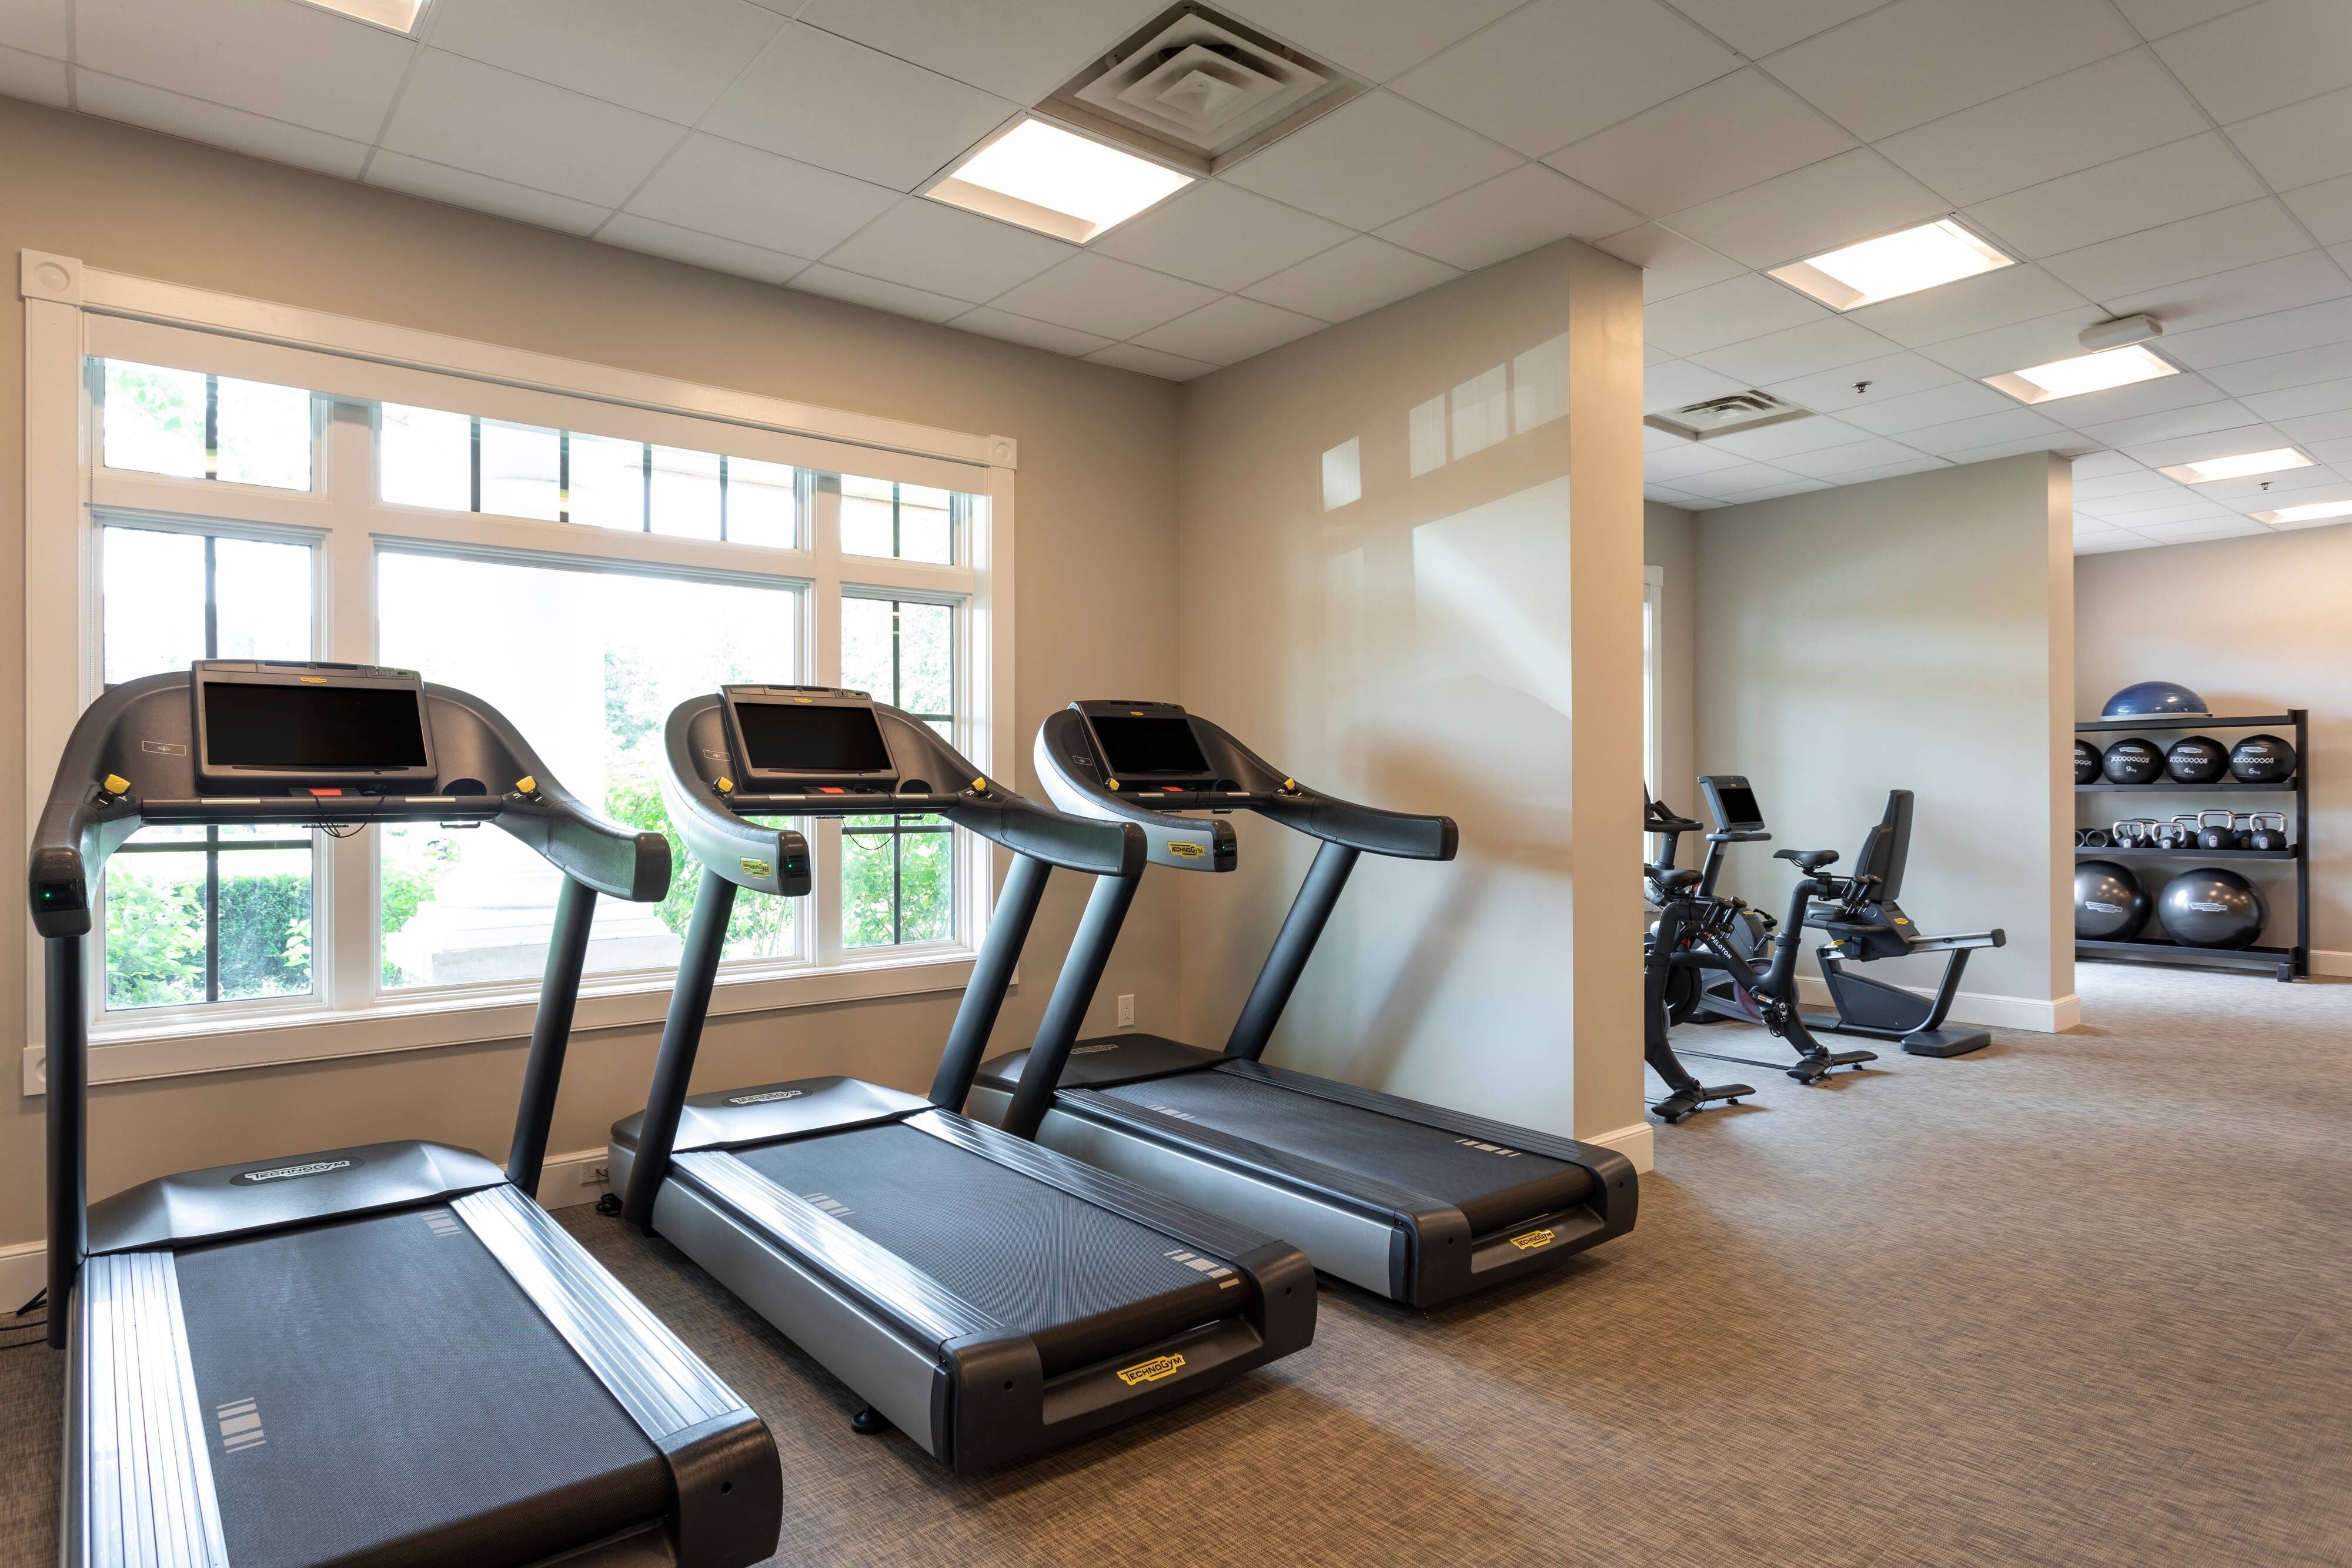 Fitness Center - Treadmills